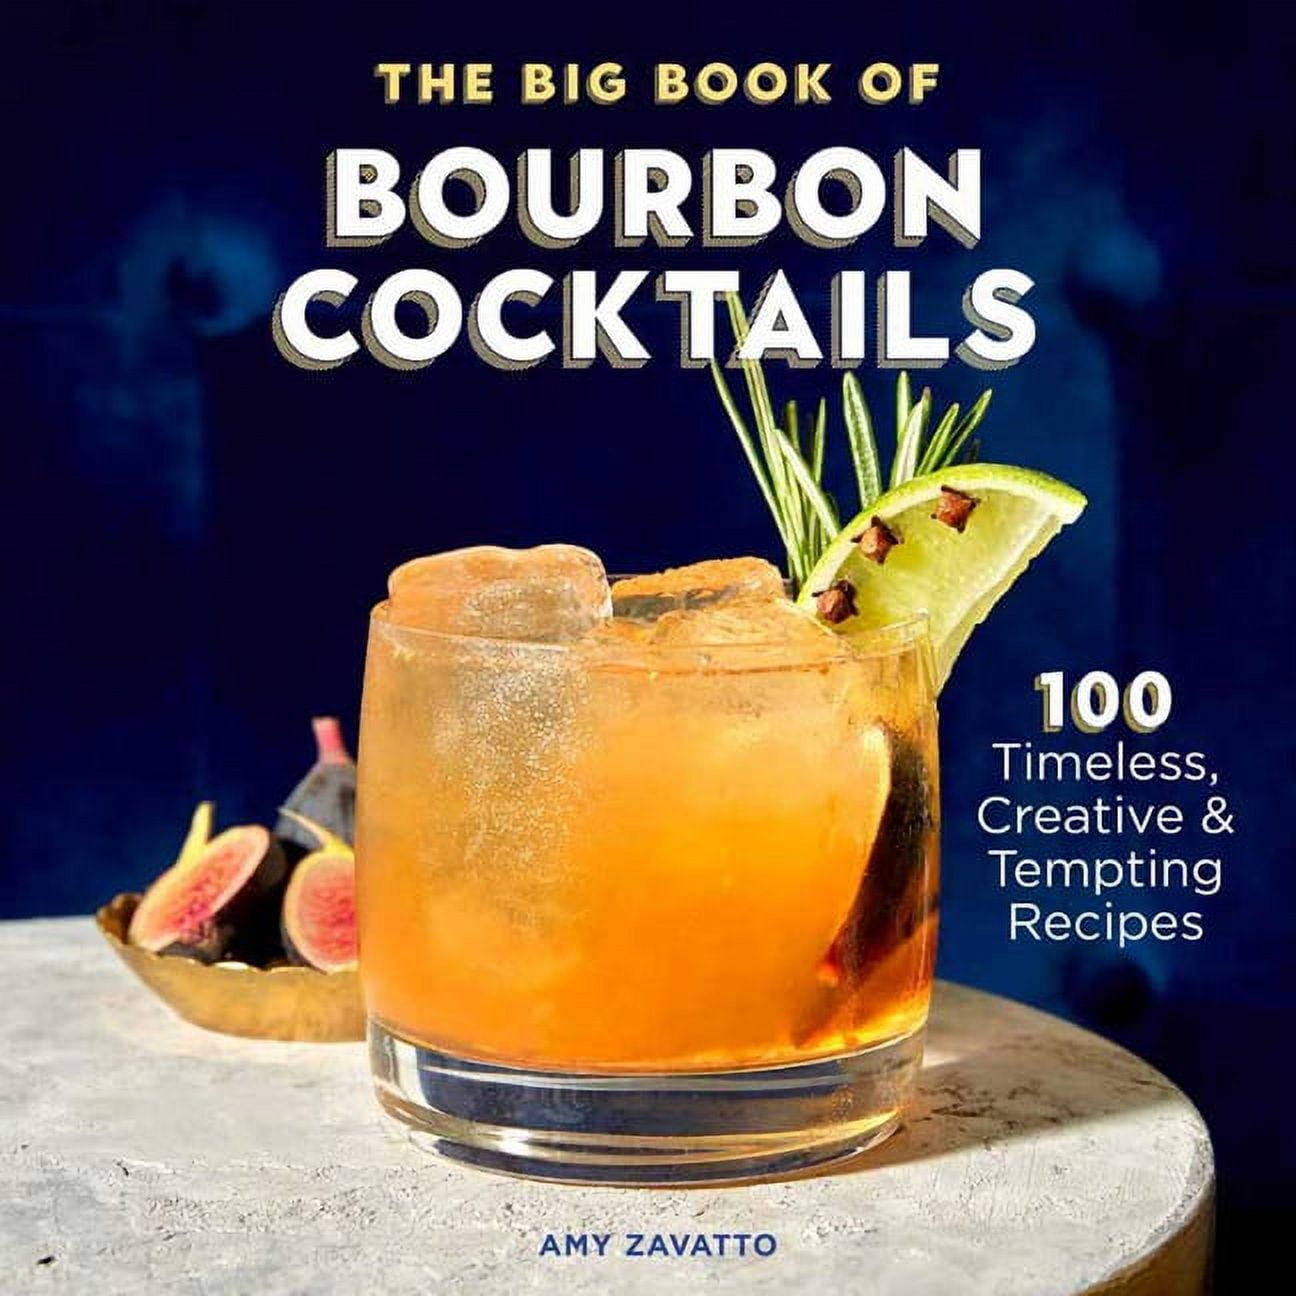 The Kentucky Bourbon Cocktails Books - A Taste of Kentucky